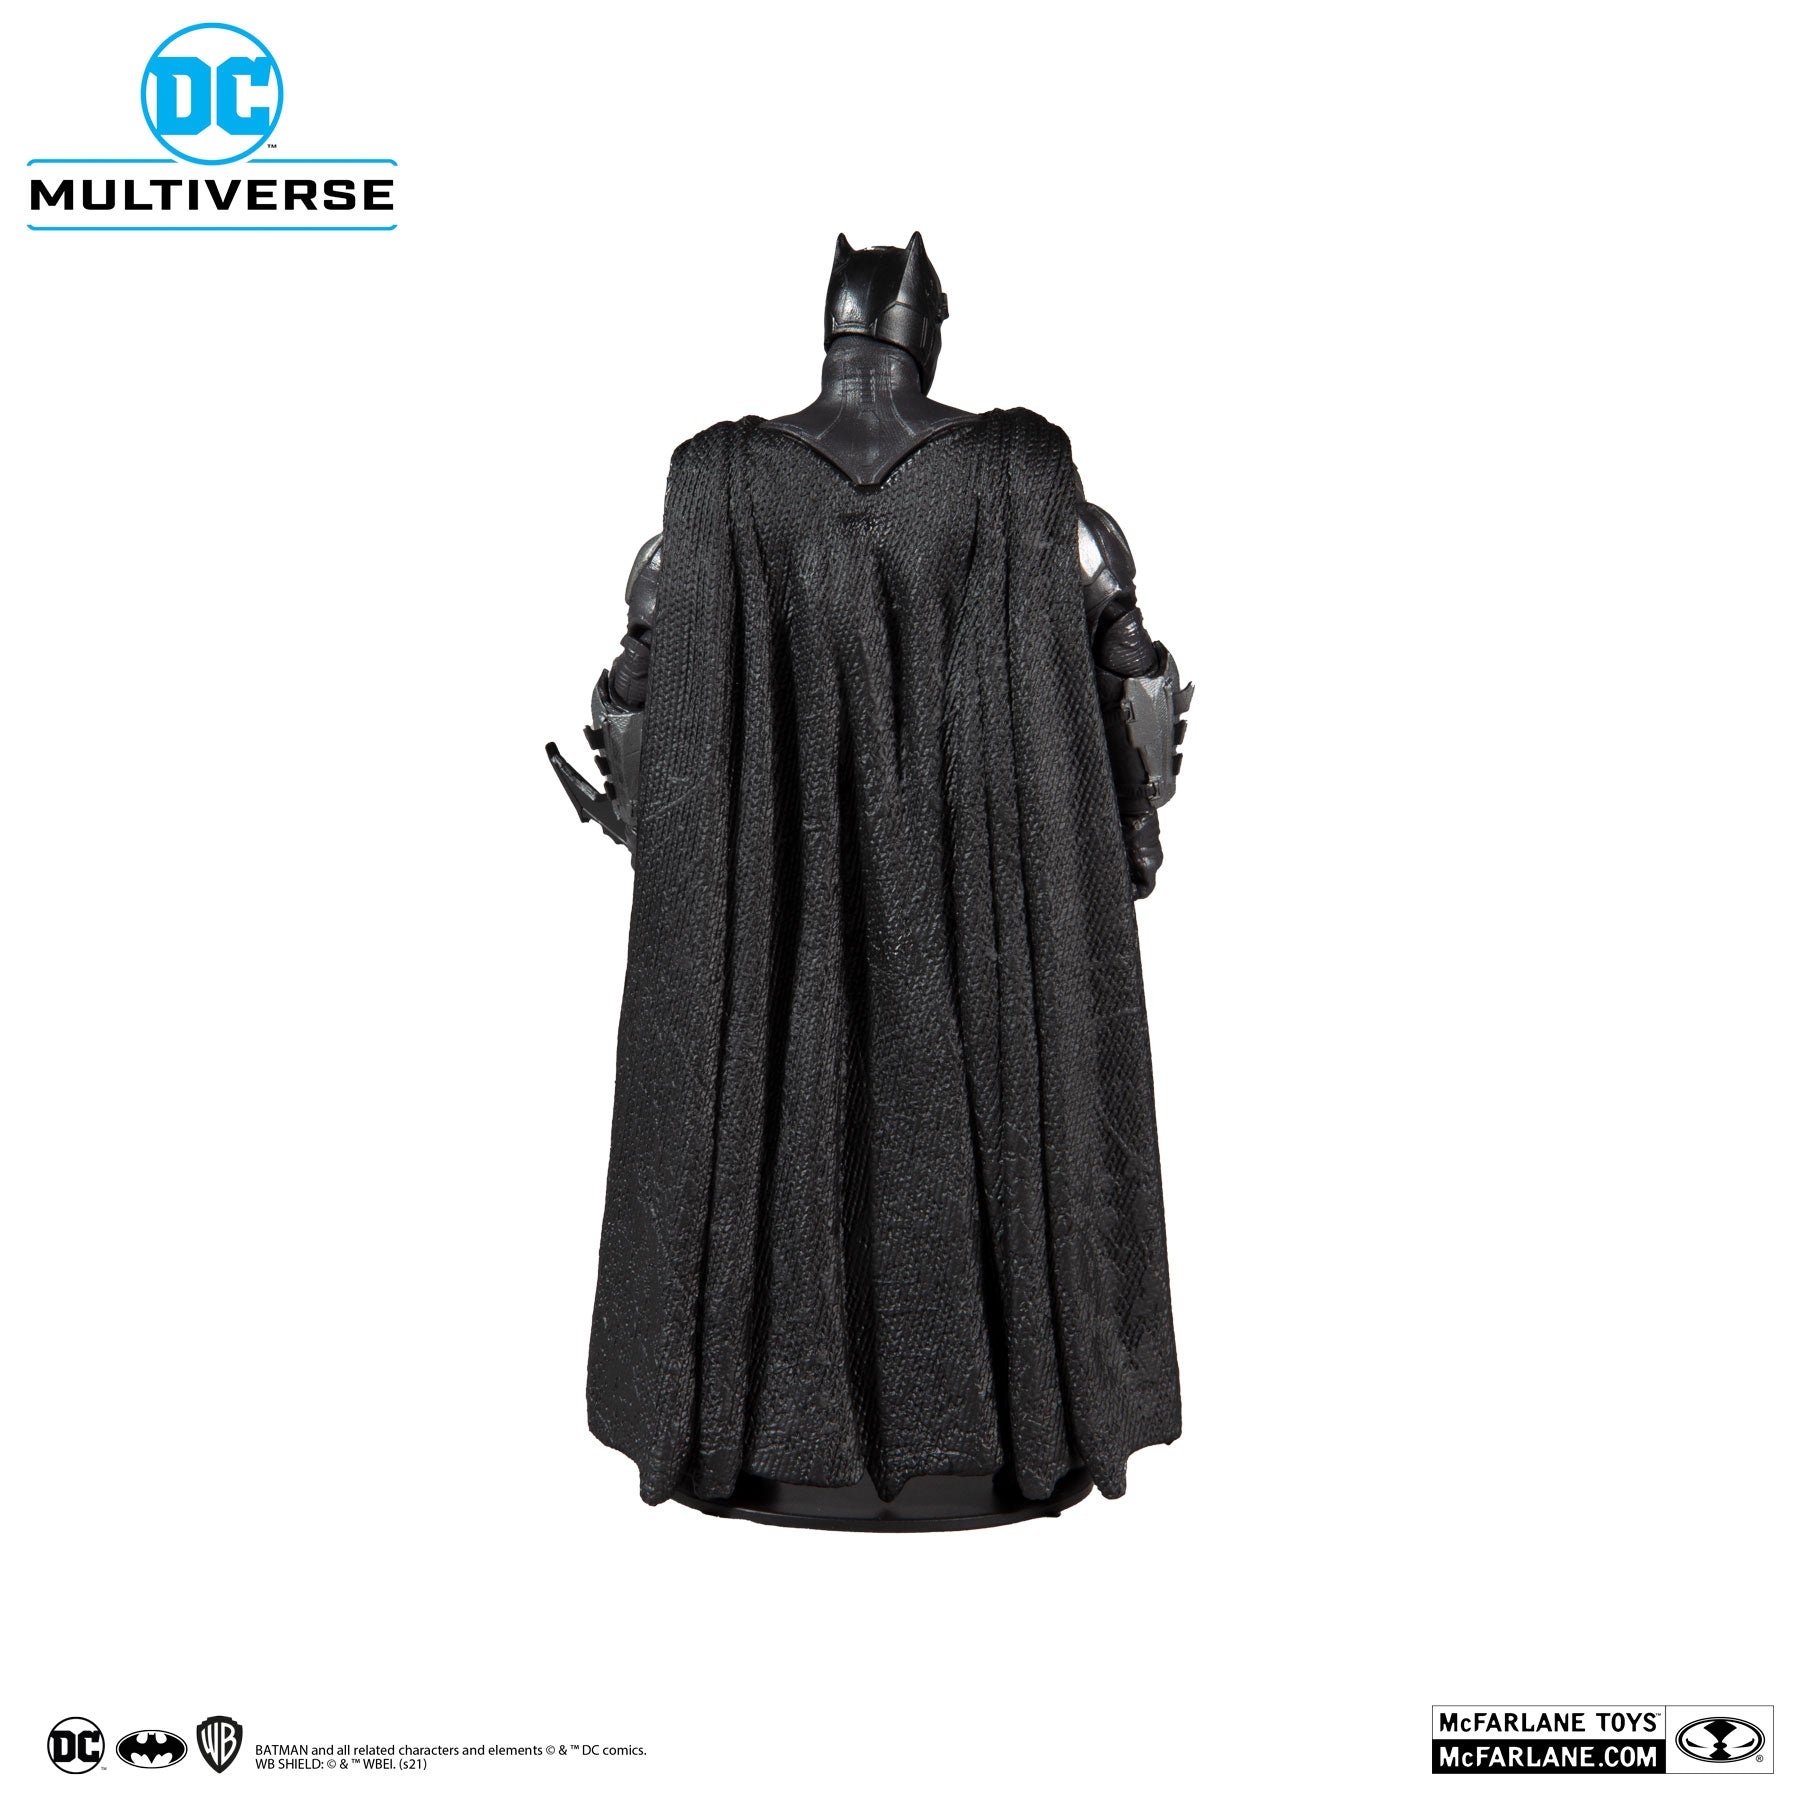 DC Multiverse Justice League Batman - McFarlane Toys-2